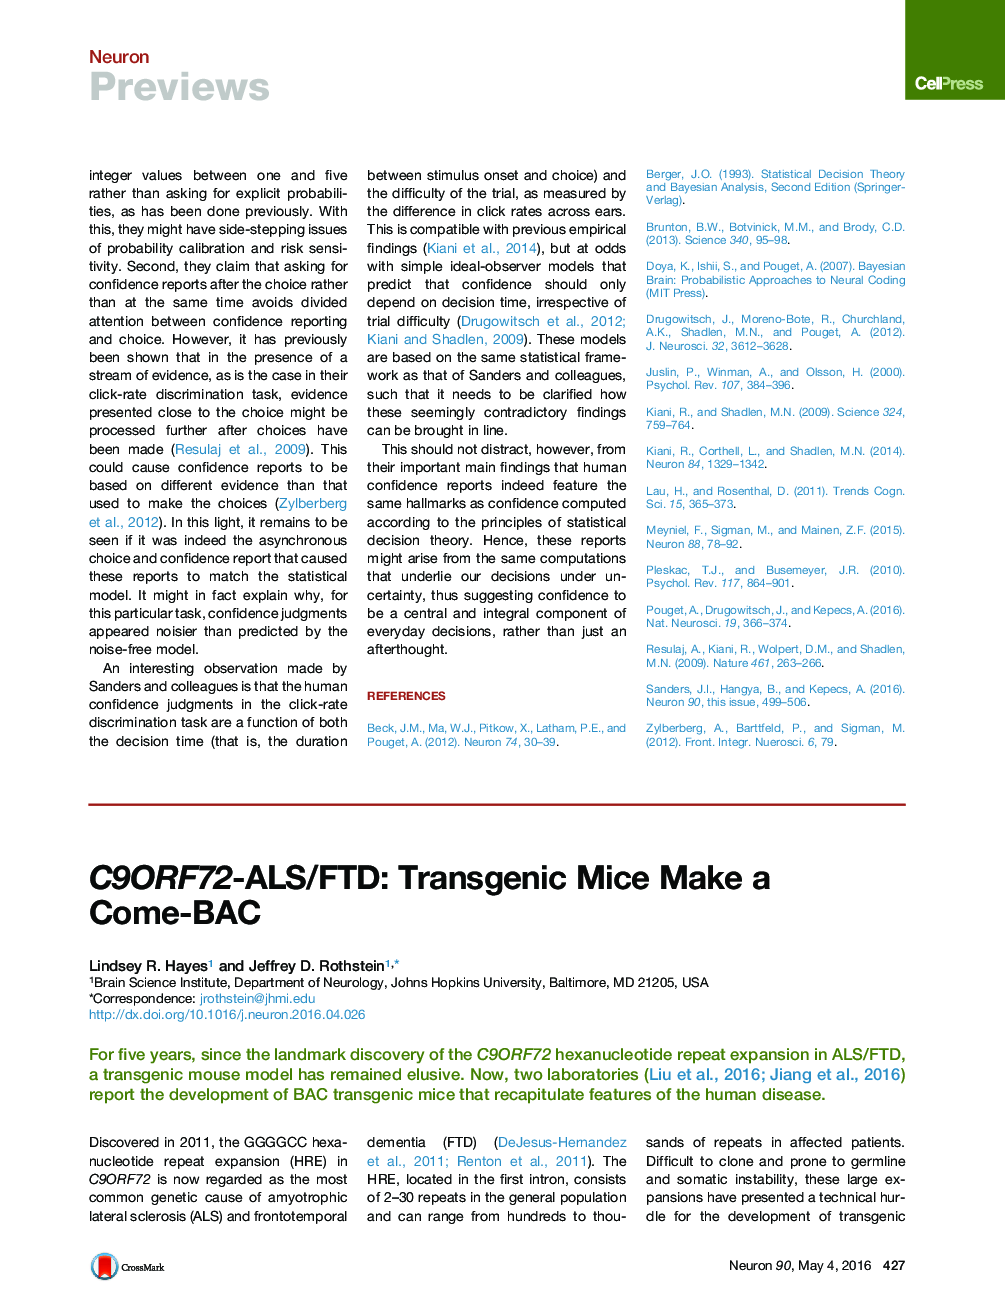 C9ORF72-ALS/FTD: Transgenic Mice Make a Come-BAC